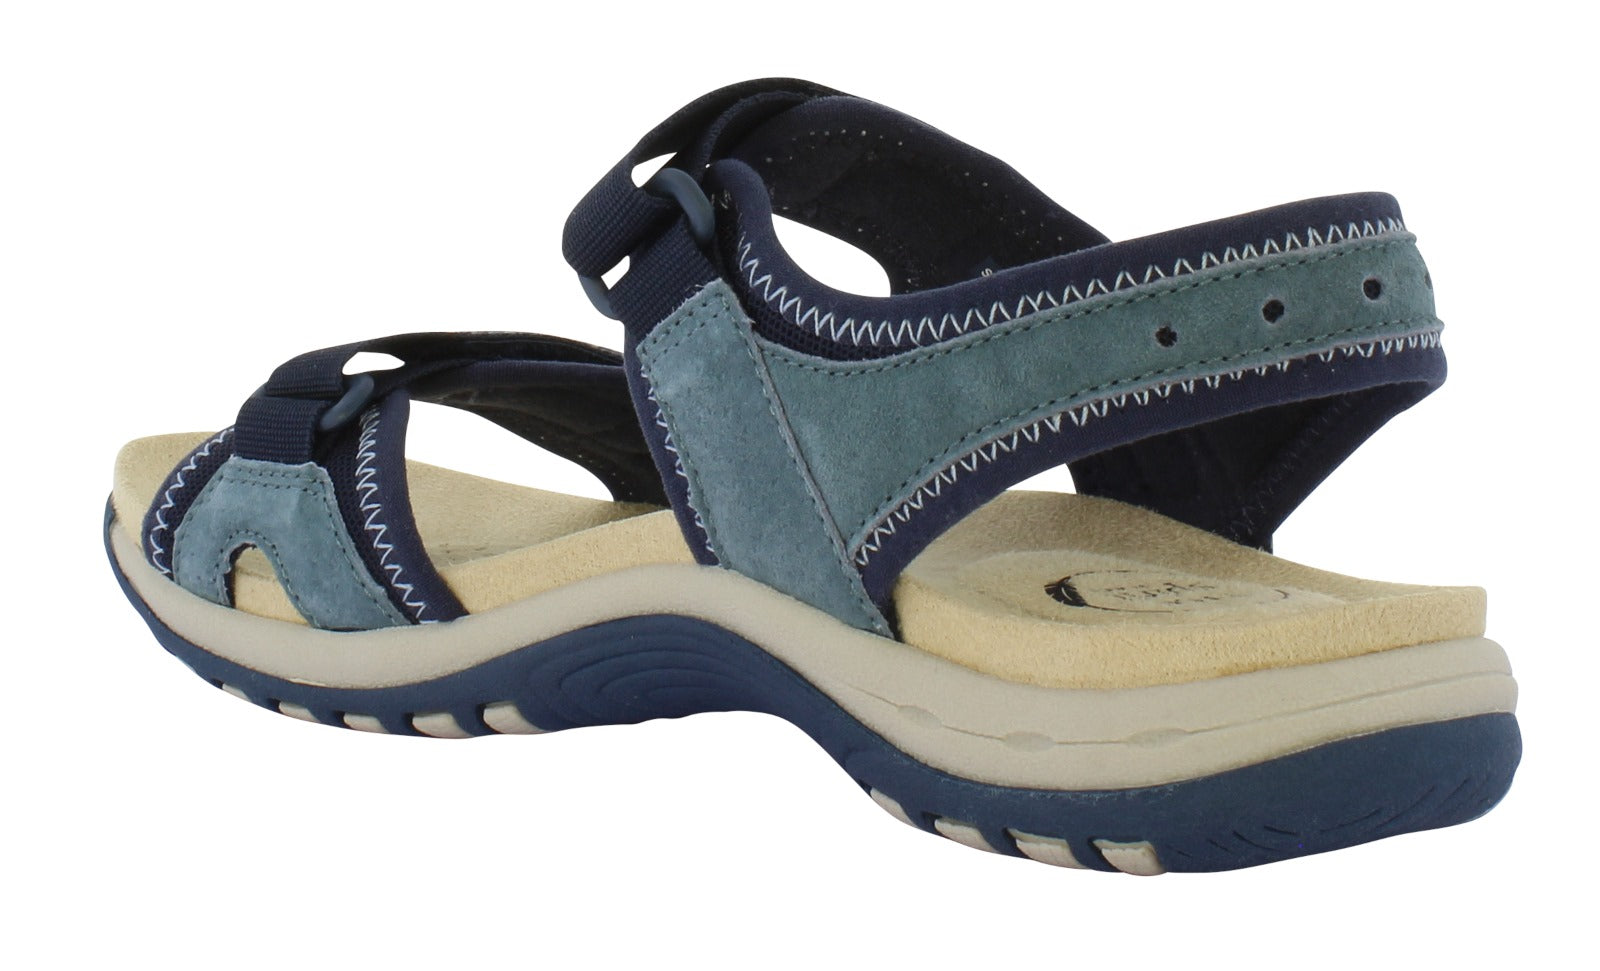 Free Spirit Frisco Ladies Navy Suede & Textile Touch Fastening Sandals